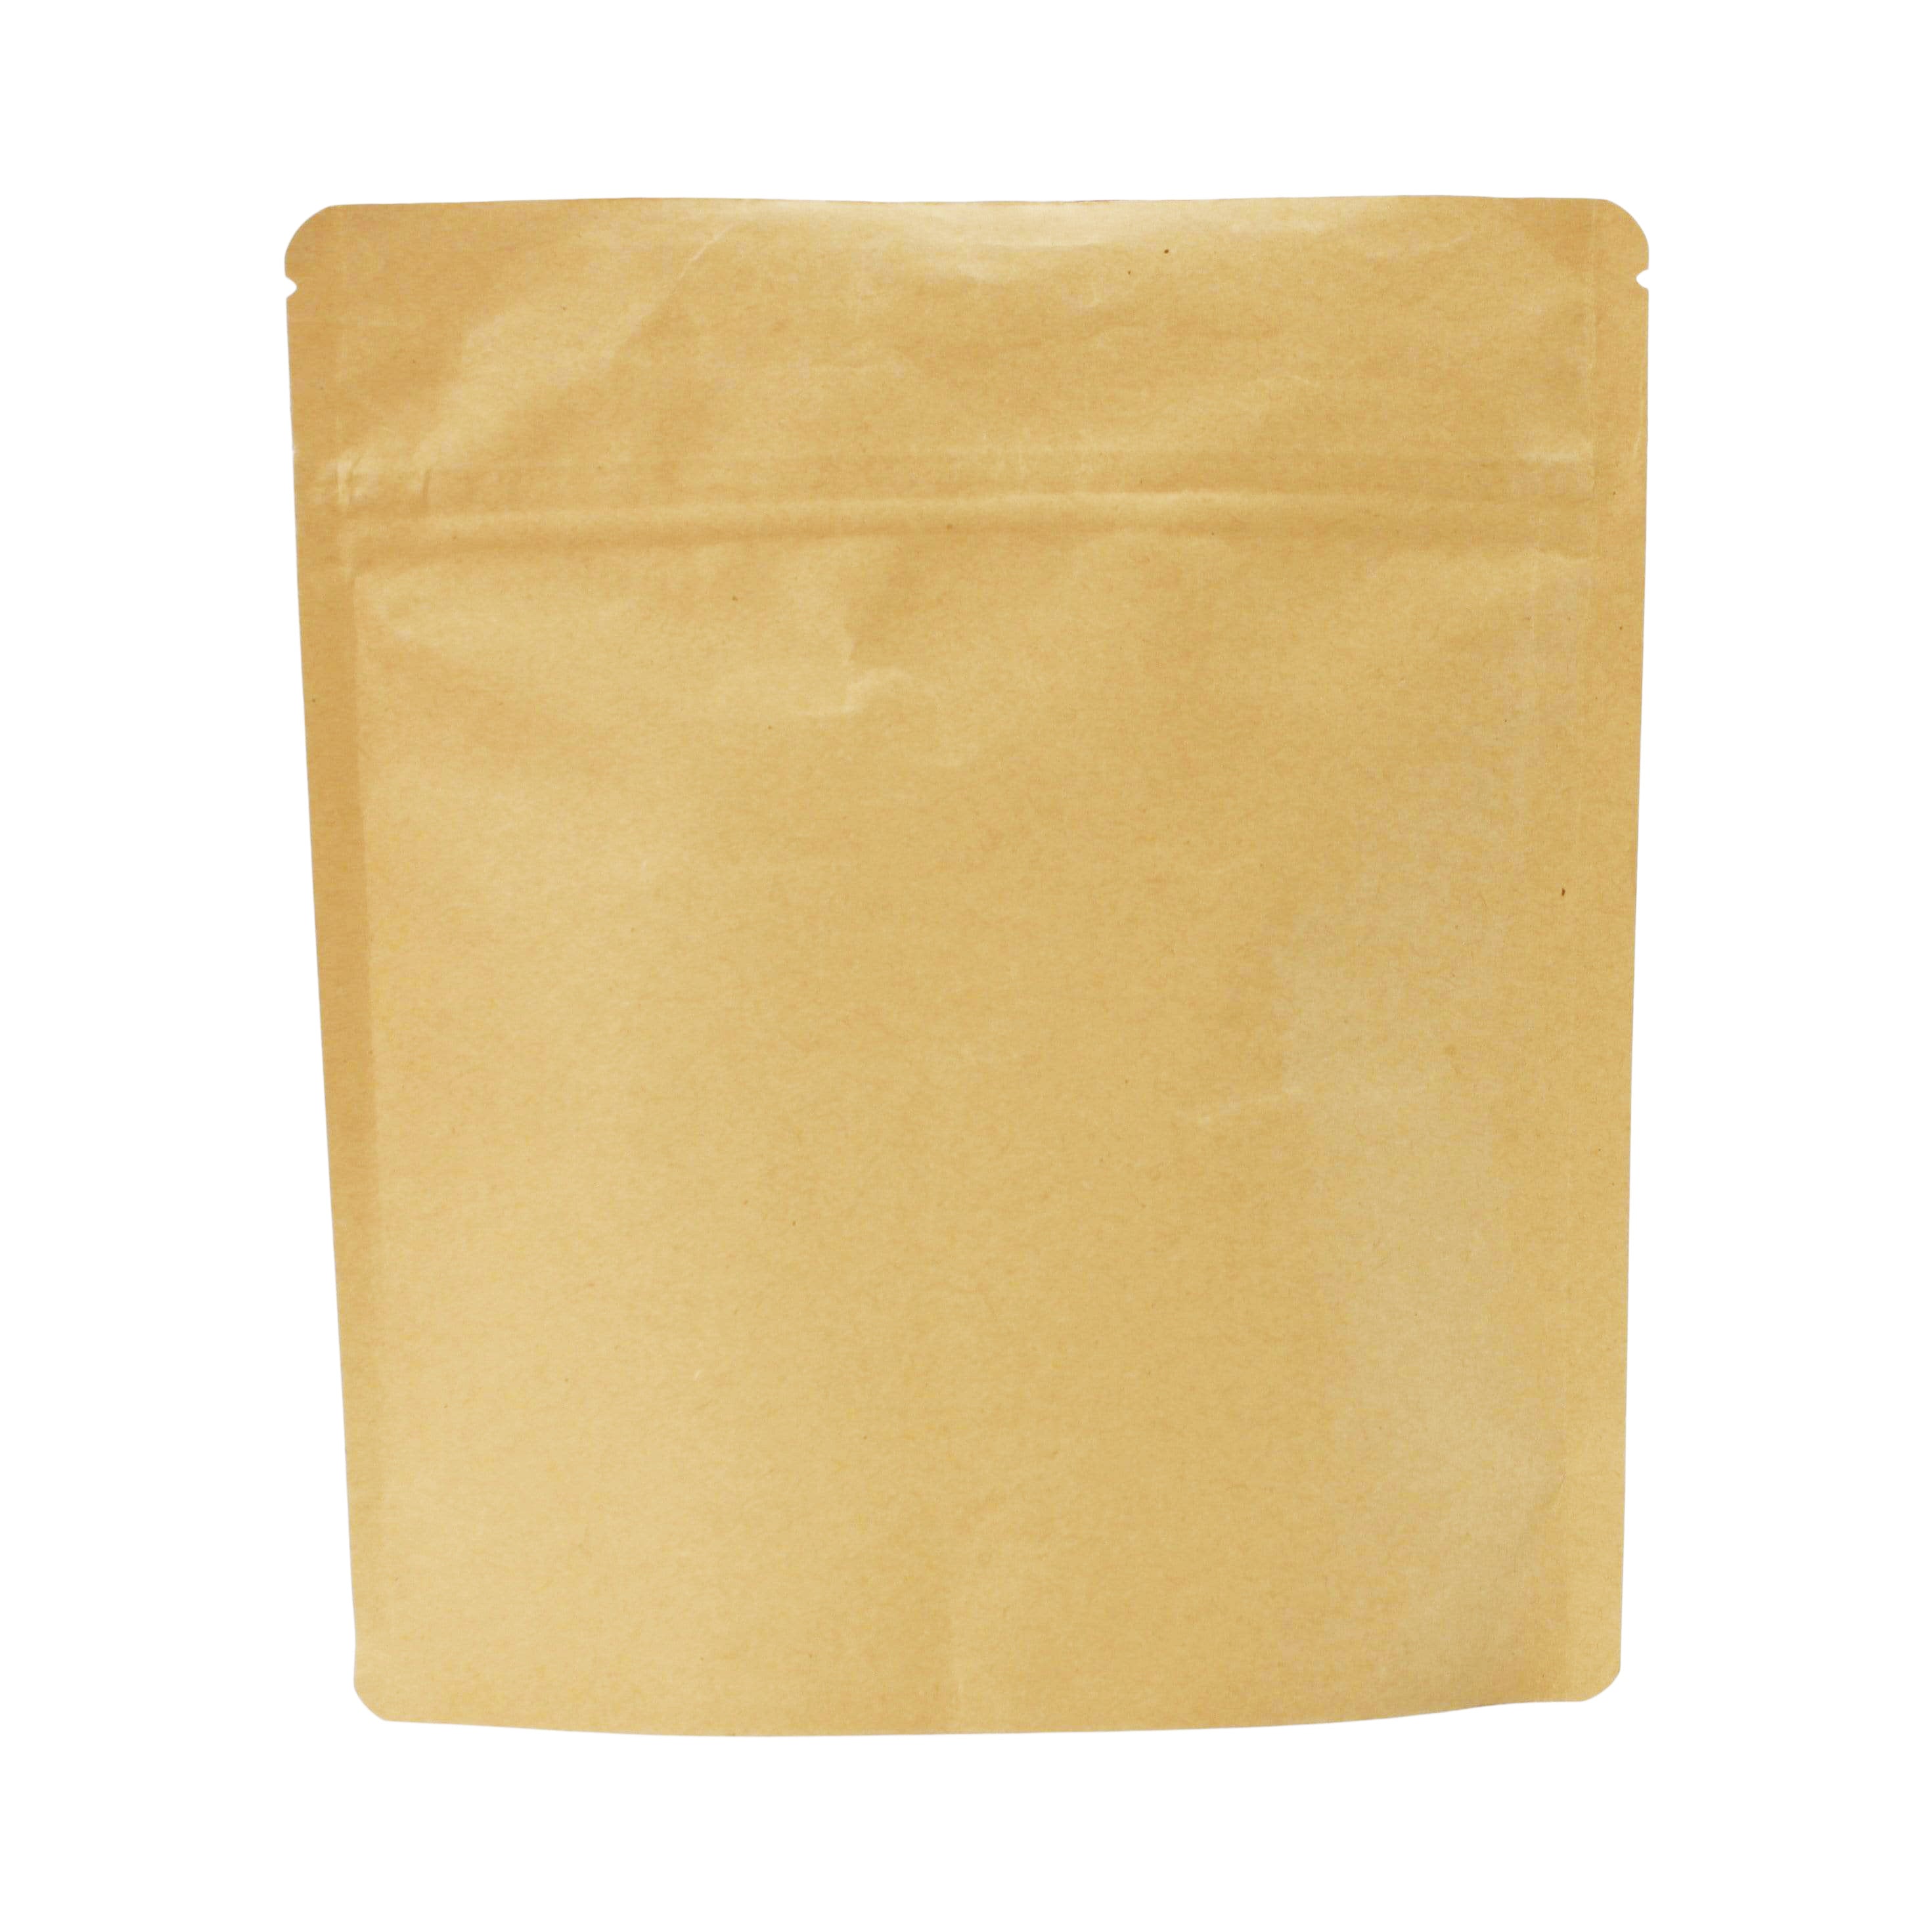 Bag King Child-Resistant Wide Mouth Kraft Bag (1 oz) 7" x 7.9"